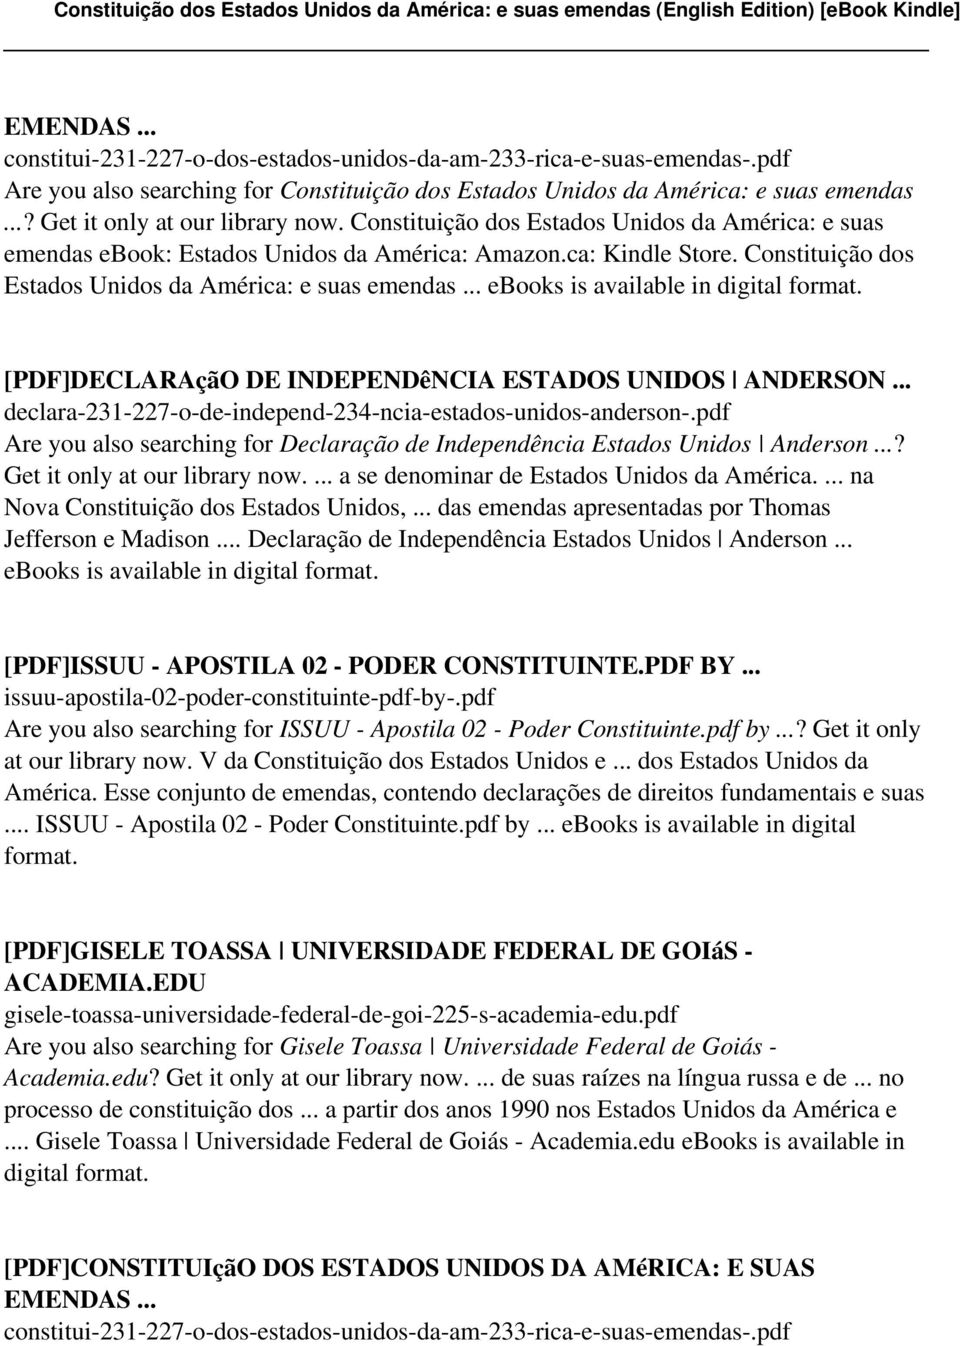 Constituição dos Estados Unidos da América: e suas emendas... ebooks is available in [PDF]DECLARAçãO DE INDEPENDêNCIA ESTADOS UNIDOS ANDERSON.